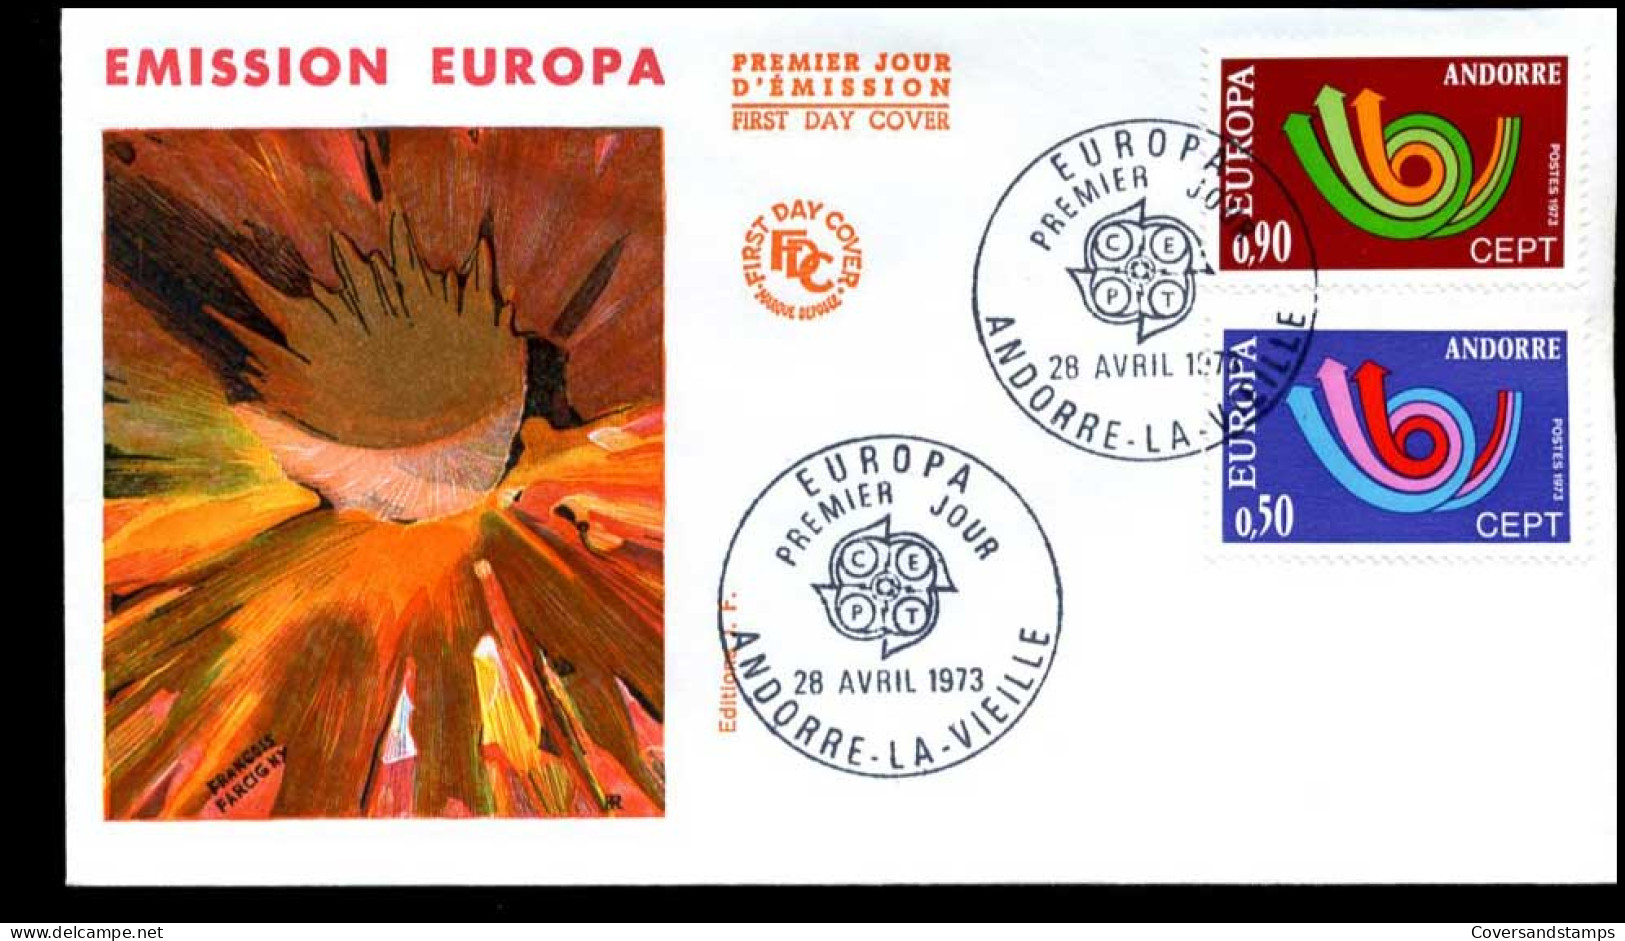  Frans Andorra - FDC - Europa CEPT 1973 - 1973